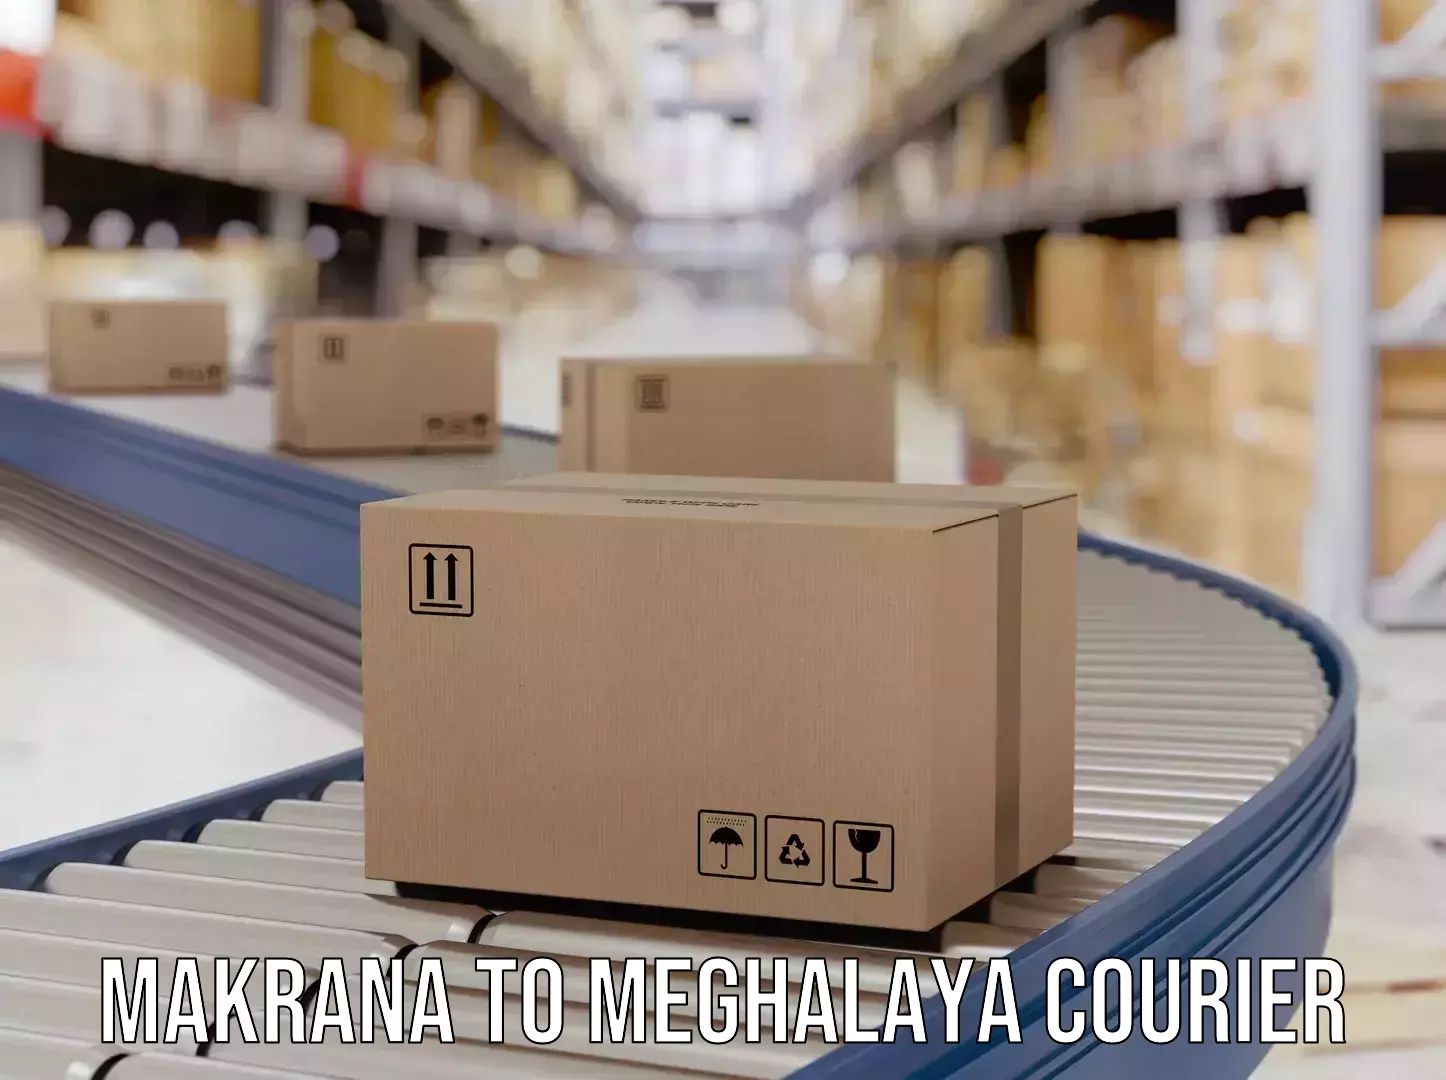 Smart shipping technology Makrana to Meghalaya